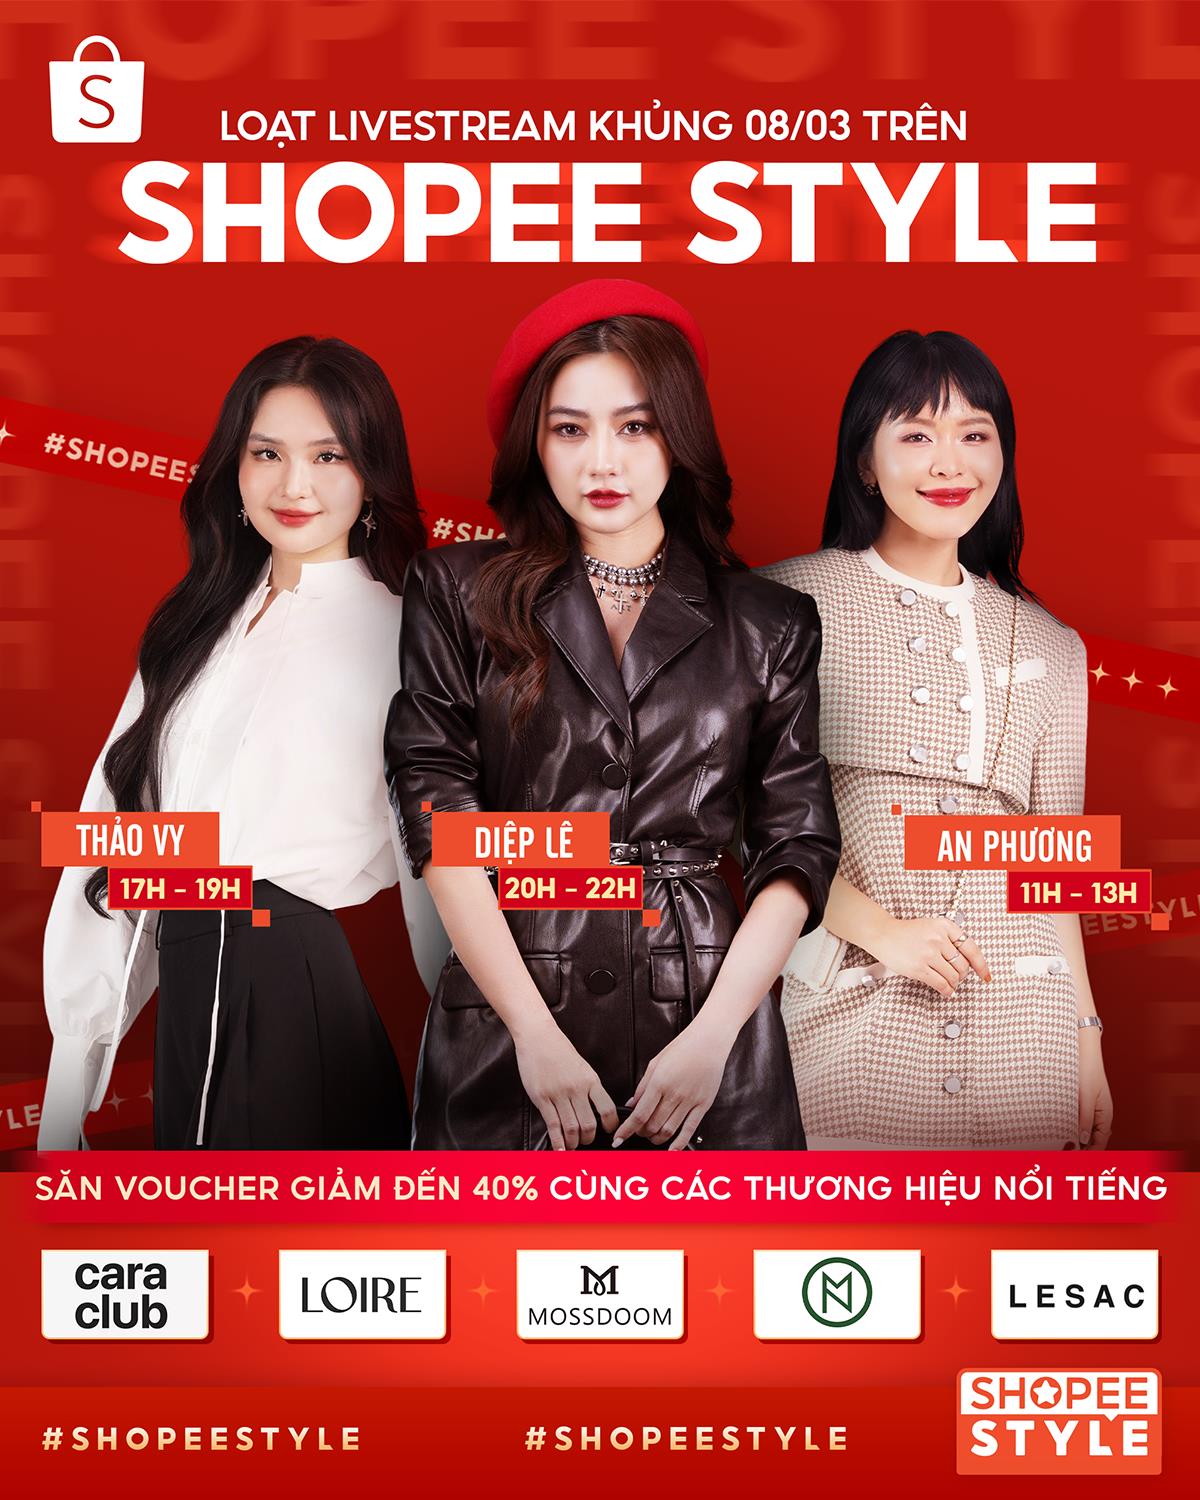 Shopee Style ra mắt cực hoành tráng, gom trọn 9 gương mặt thời trang đình đám trên mạng xã hội - Ảnh 3.